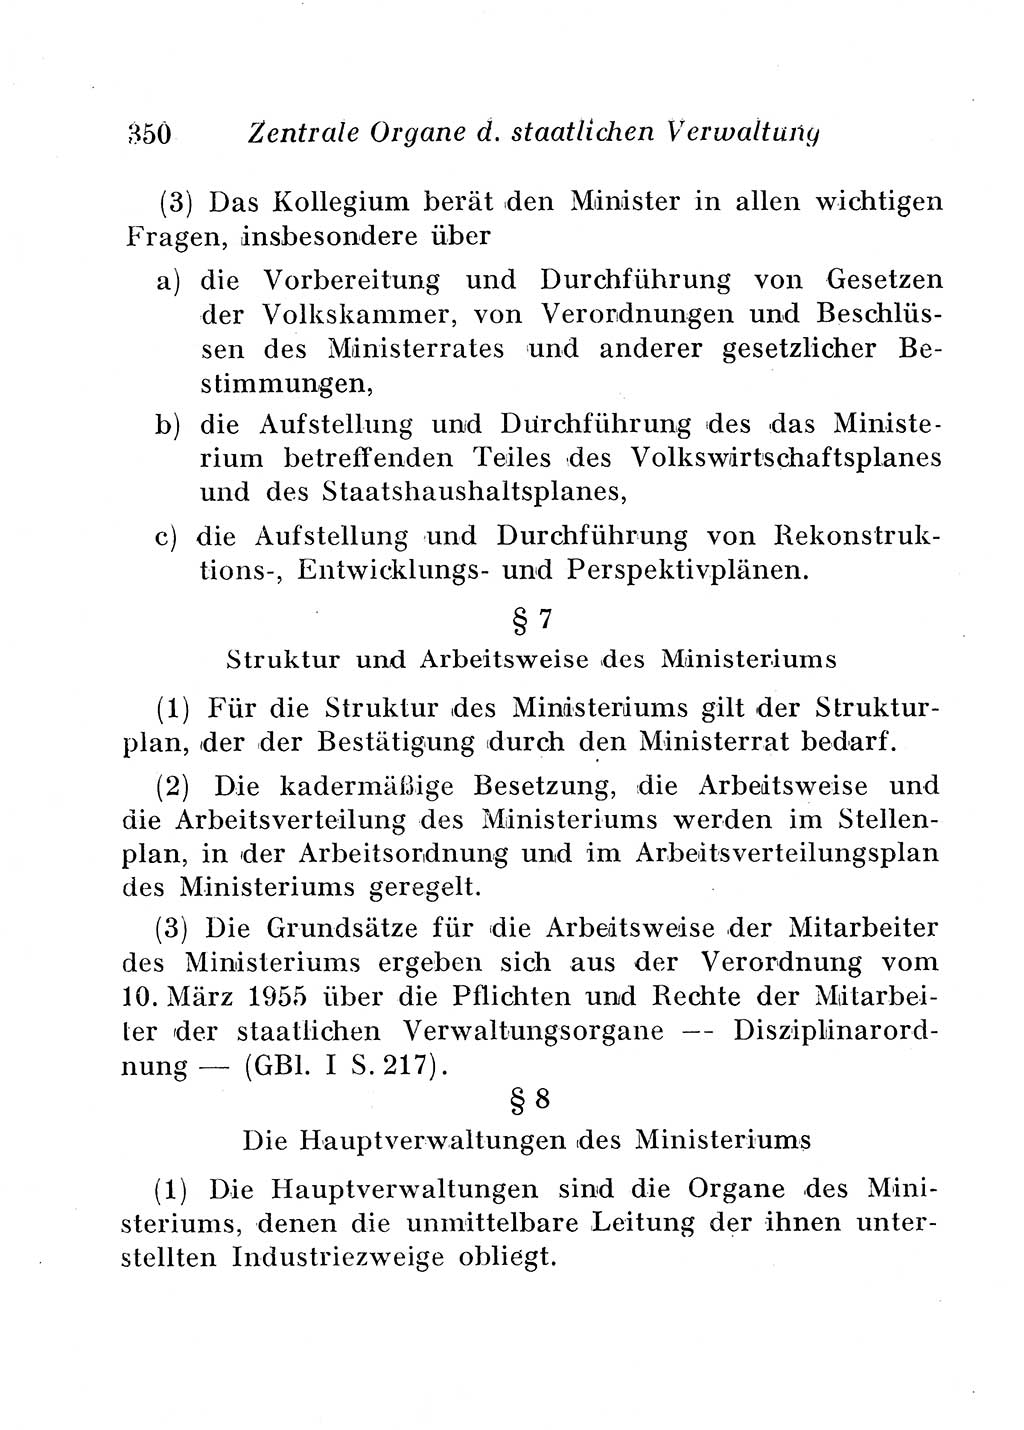 Staats- und verwaltungsrechtliche Gesetze der Deutschen Demokratischen Republik (DDR) 1958, Seite 350 (StVerwR Ges. DDR 1958, S. 350)